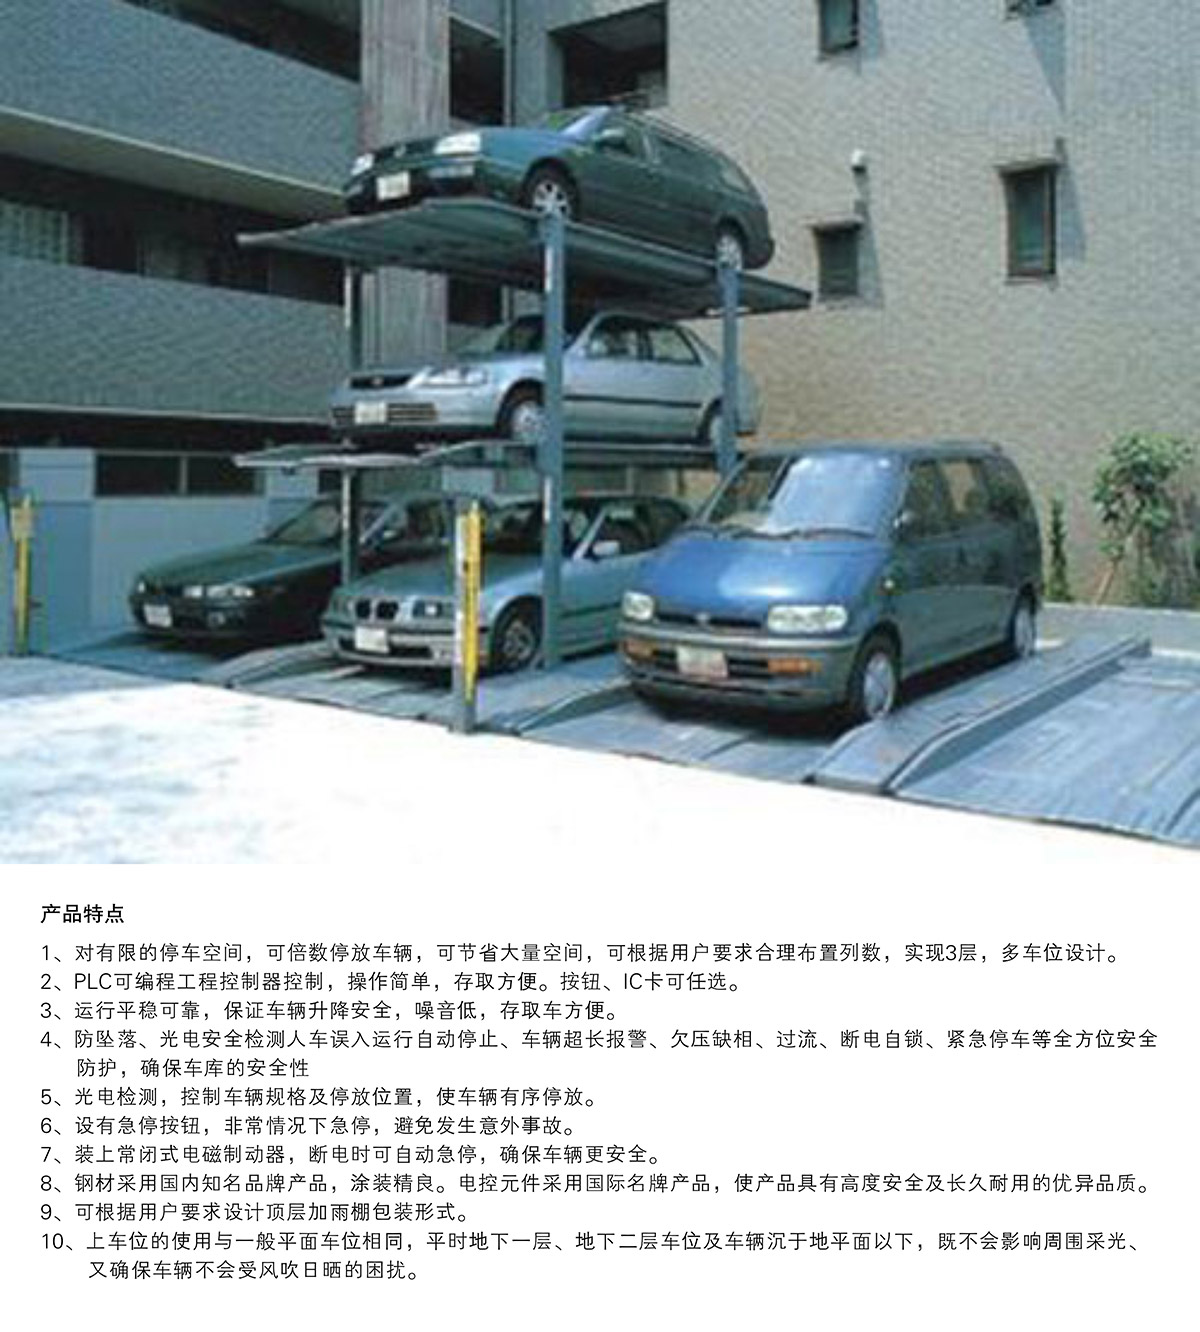 机械停车库PJS3D2三层地坑简易升降立体停车产品特点.jpg